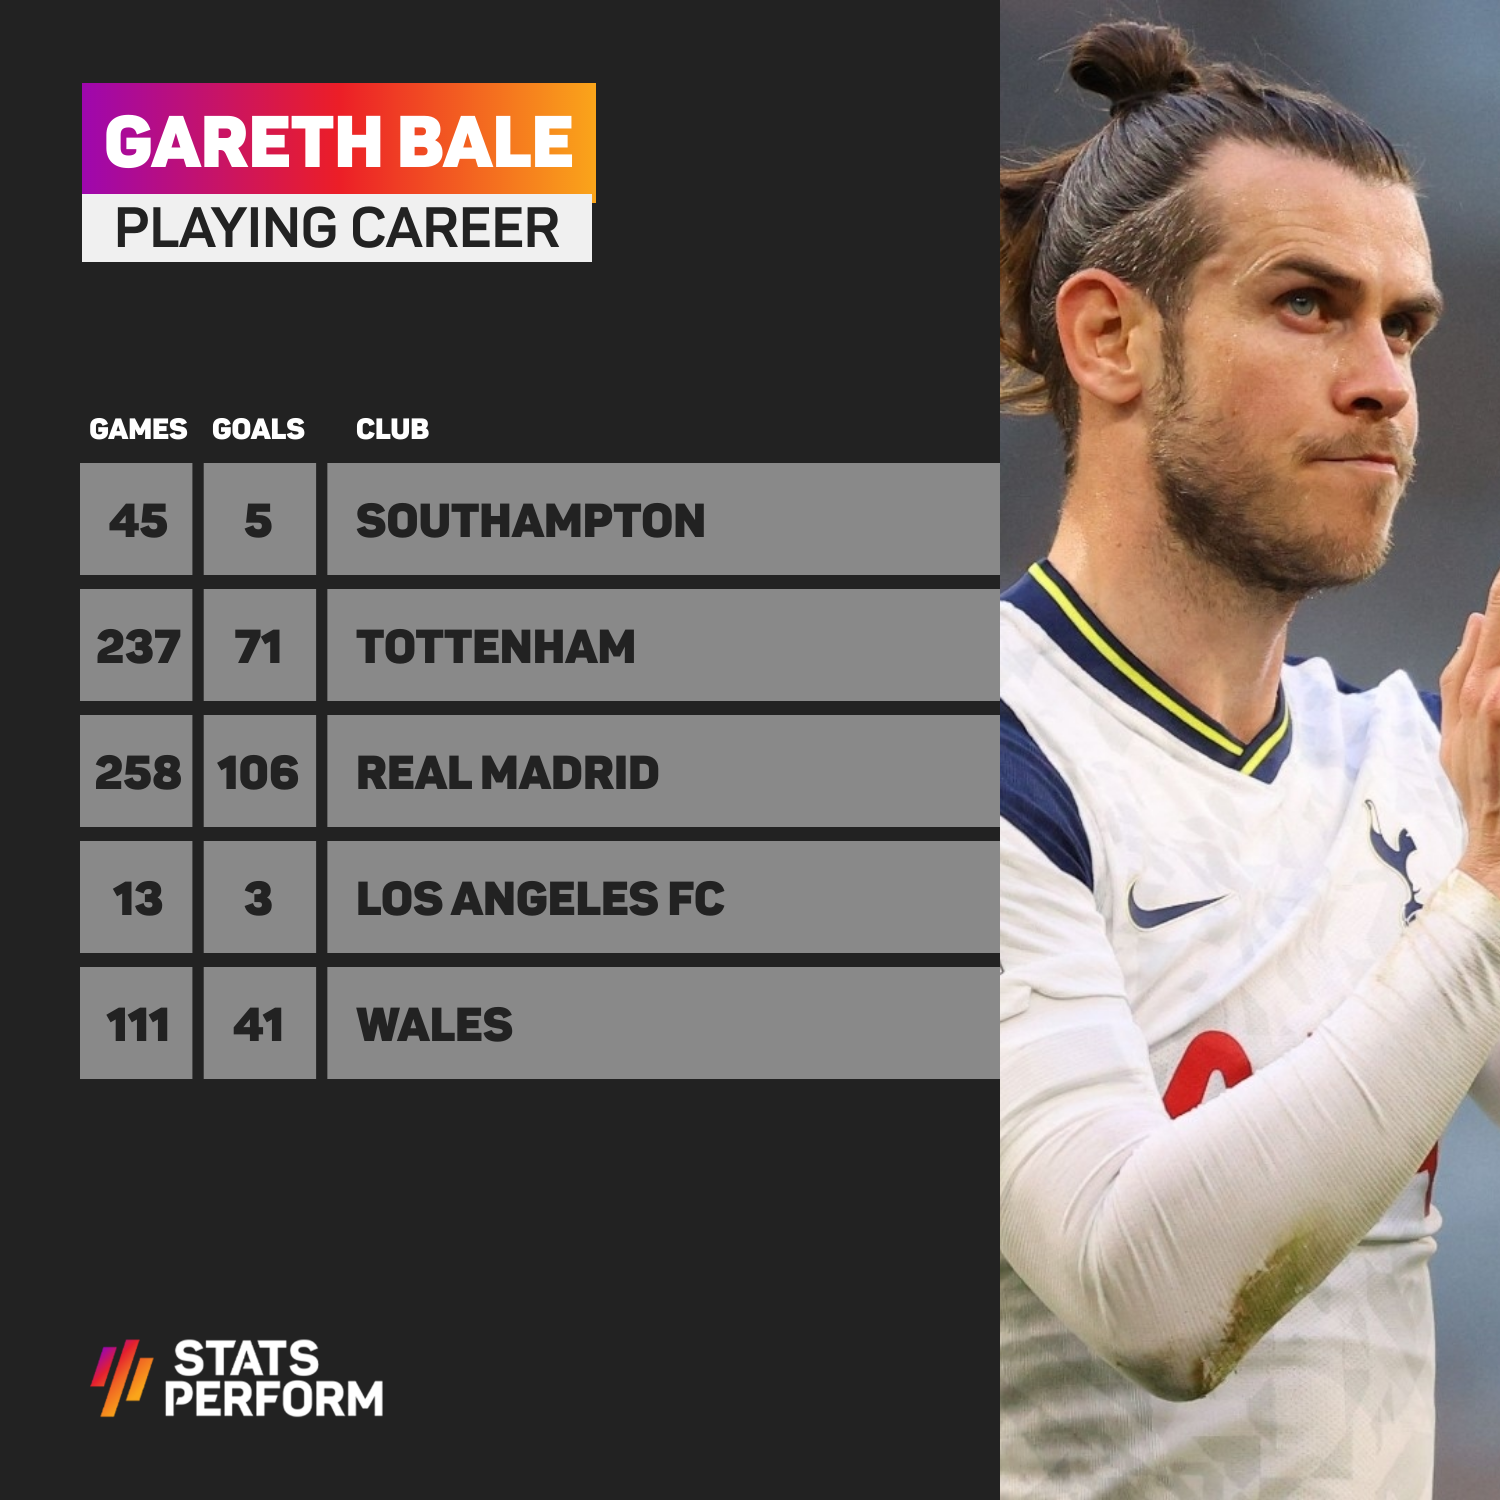 Gareth Bale's playing career